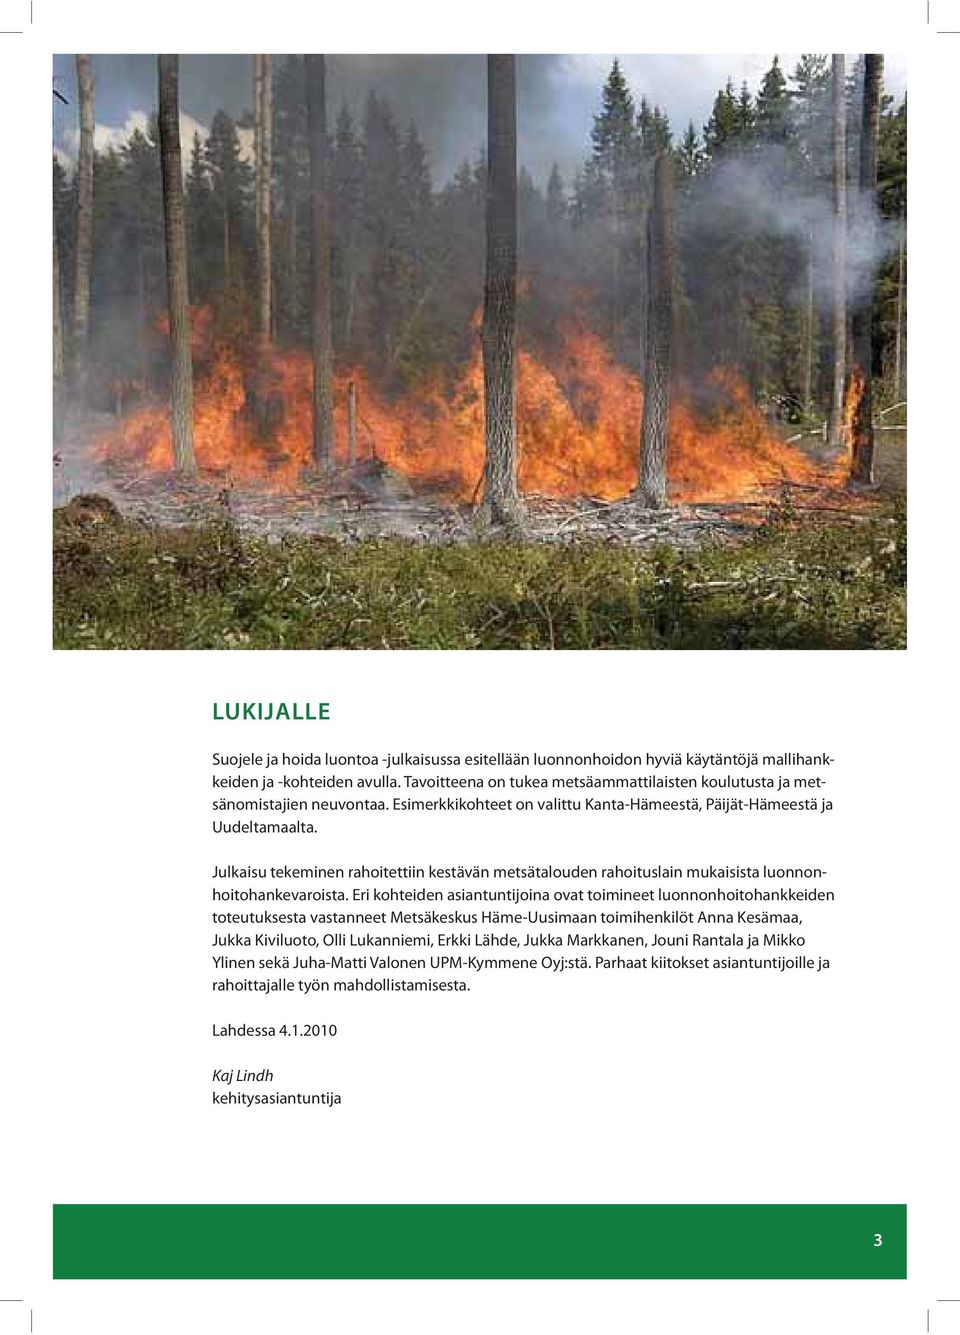 Julkaisu tekeminen rahoitettiin kestävän metsätalouden rahoituslain mukaisista luonnonhoitohankevaroista.